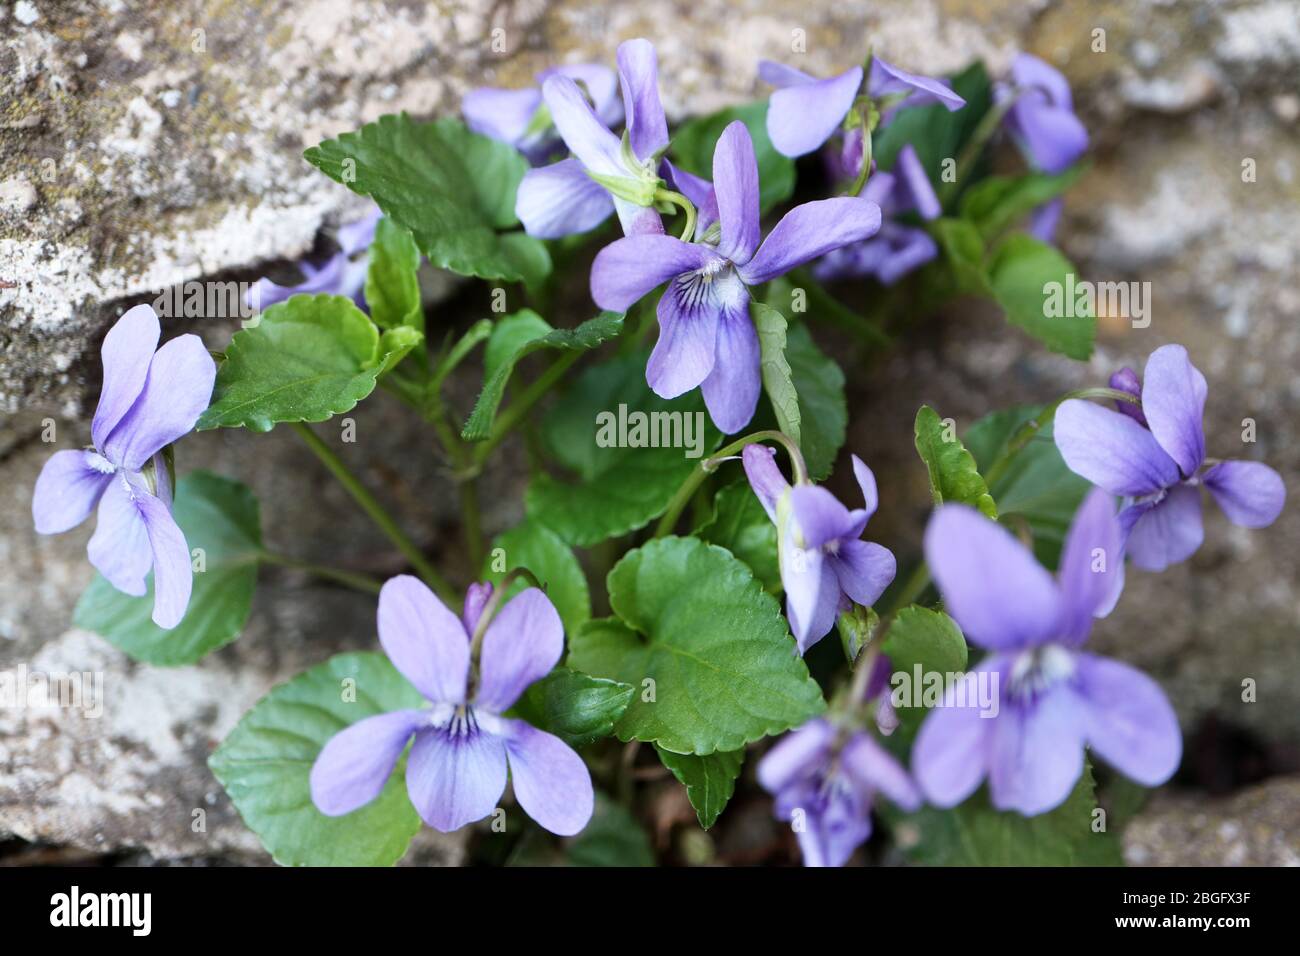 Violettes violettes sauvages dans le jardin, violettes à ressort avec pétales délicats et feuilles vertes, violettes violettes avec fond de mur de pierre, macro, photo florale, ma Banque D'Images